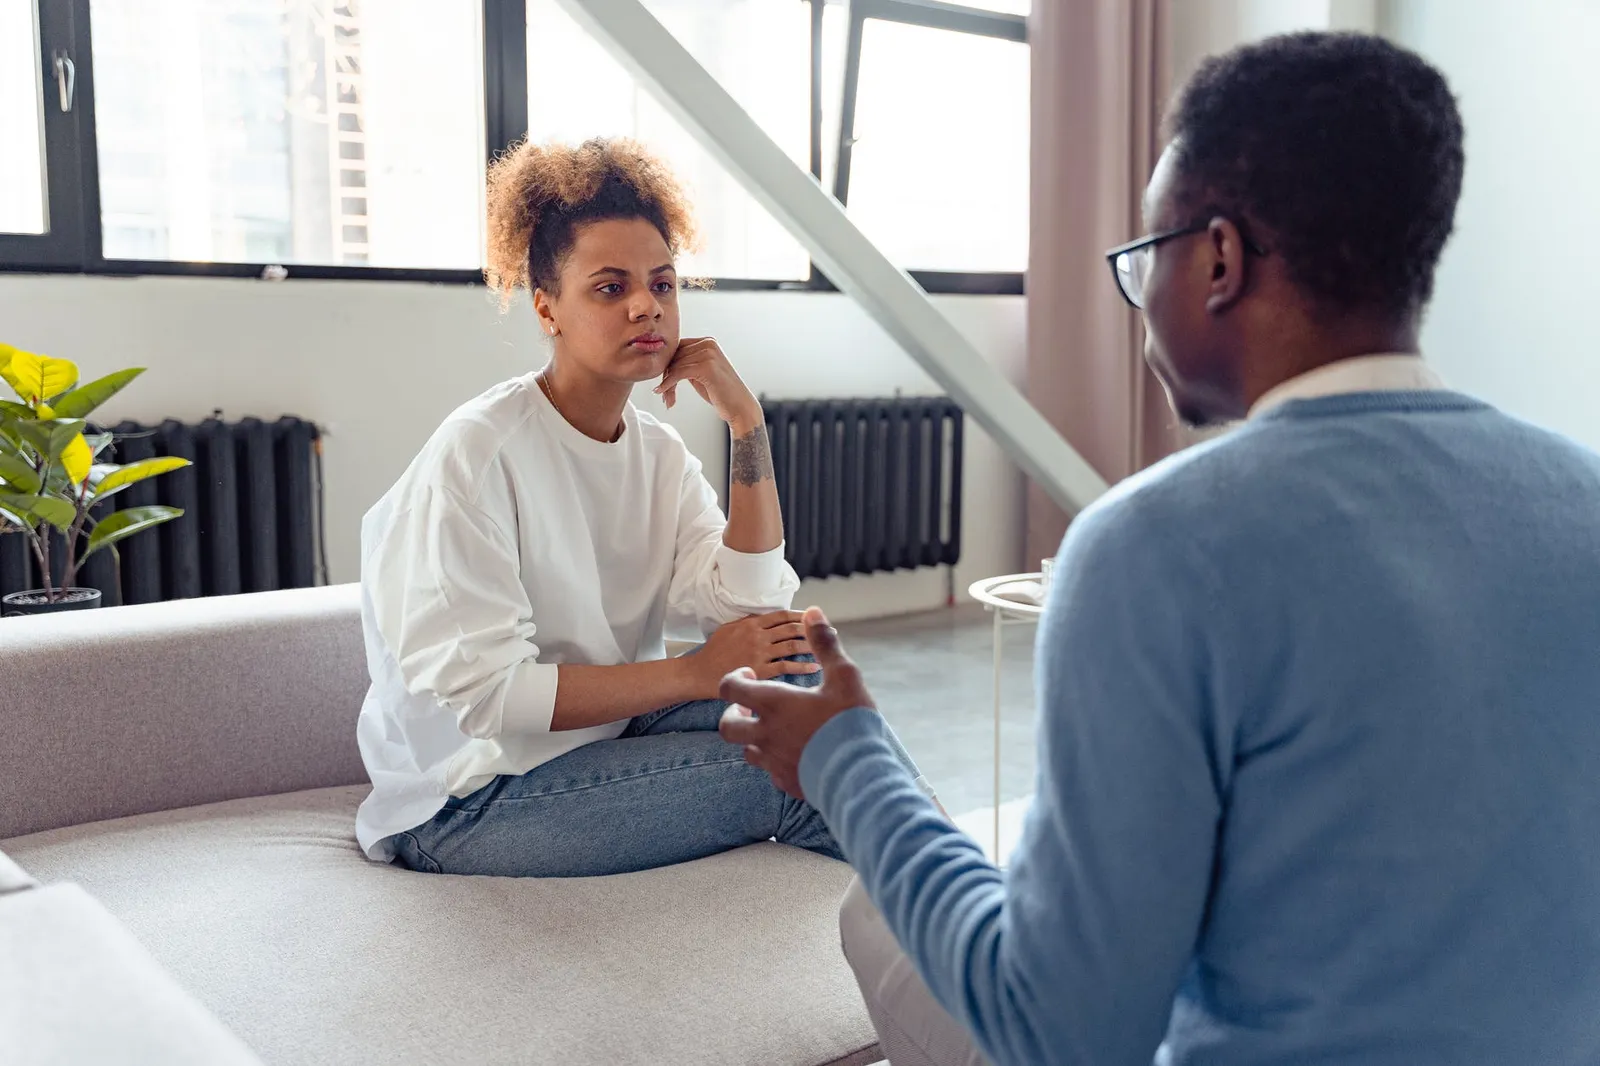 Ini 10 Tips dari Terapis Saat Bertengkar dengan Pasangan